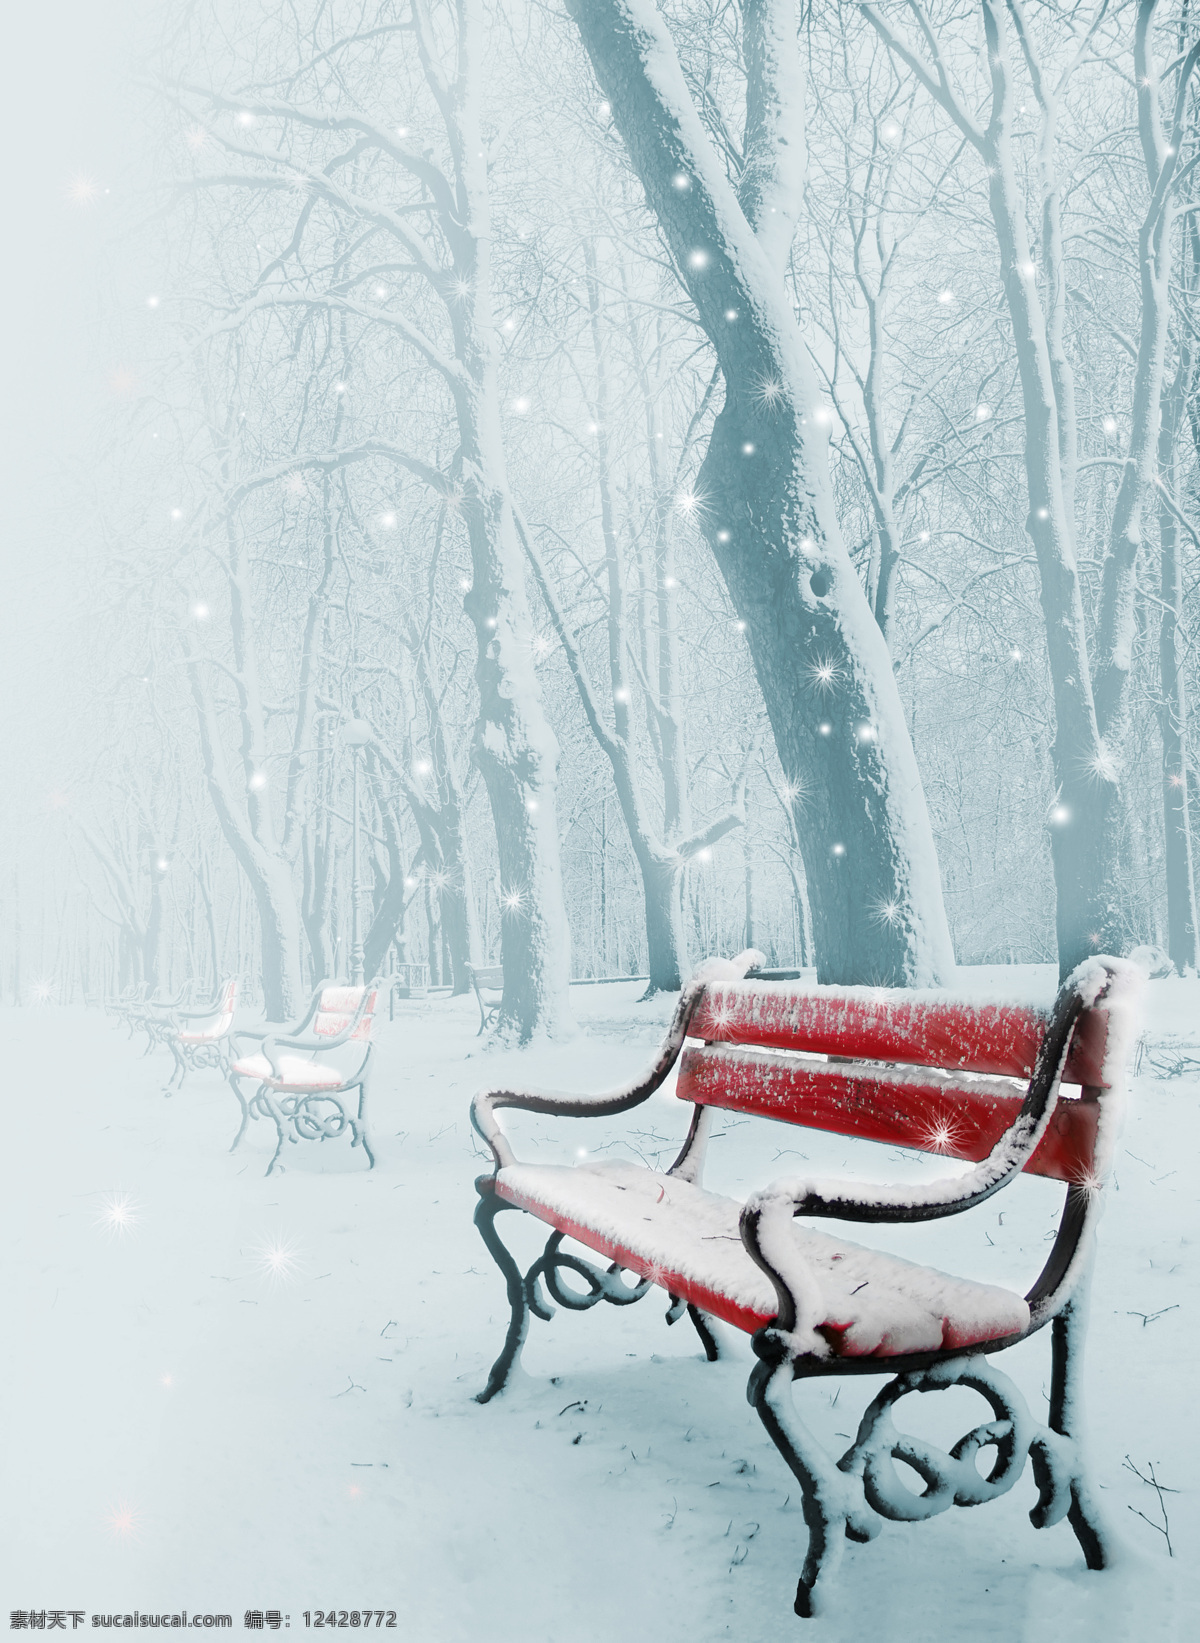 浪漫雪景摄影 雪景 冬天 唯美浪漫 雪花飞舞 浪漫雪景 冬季